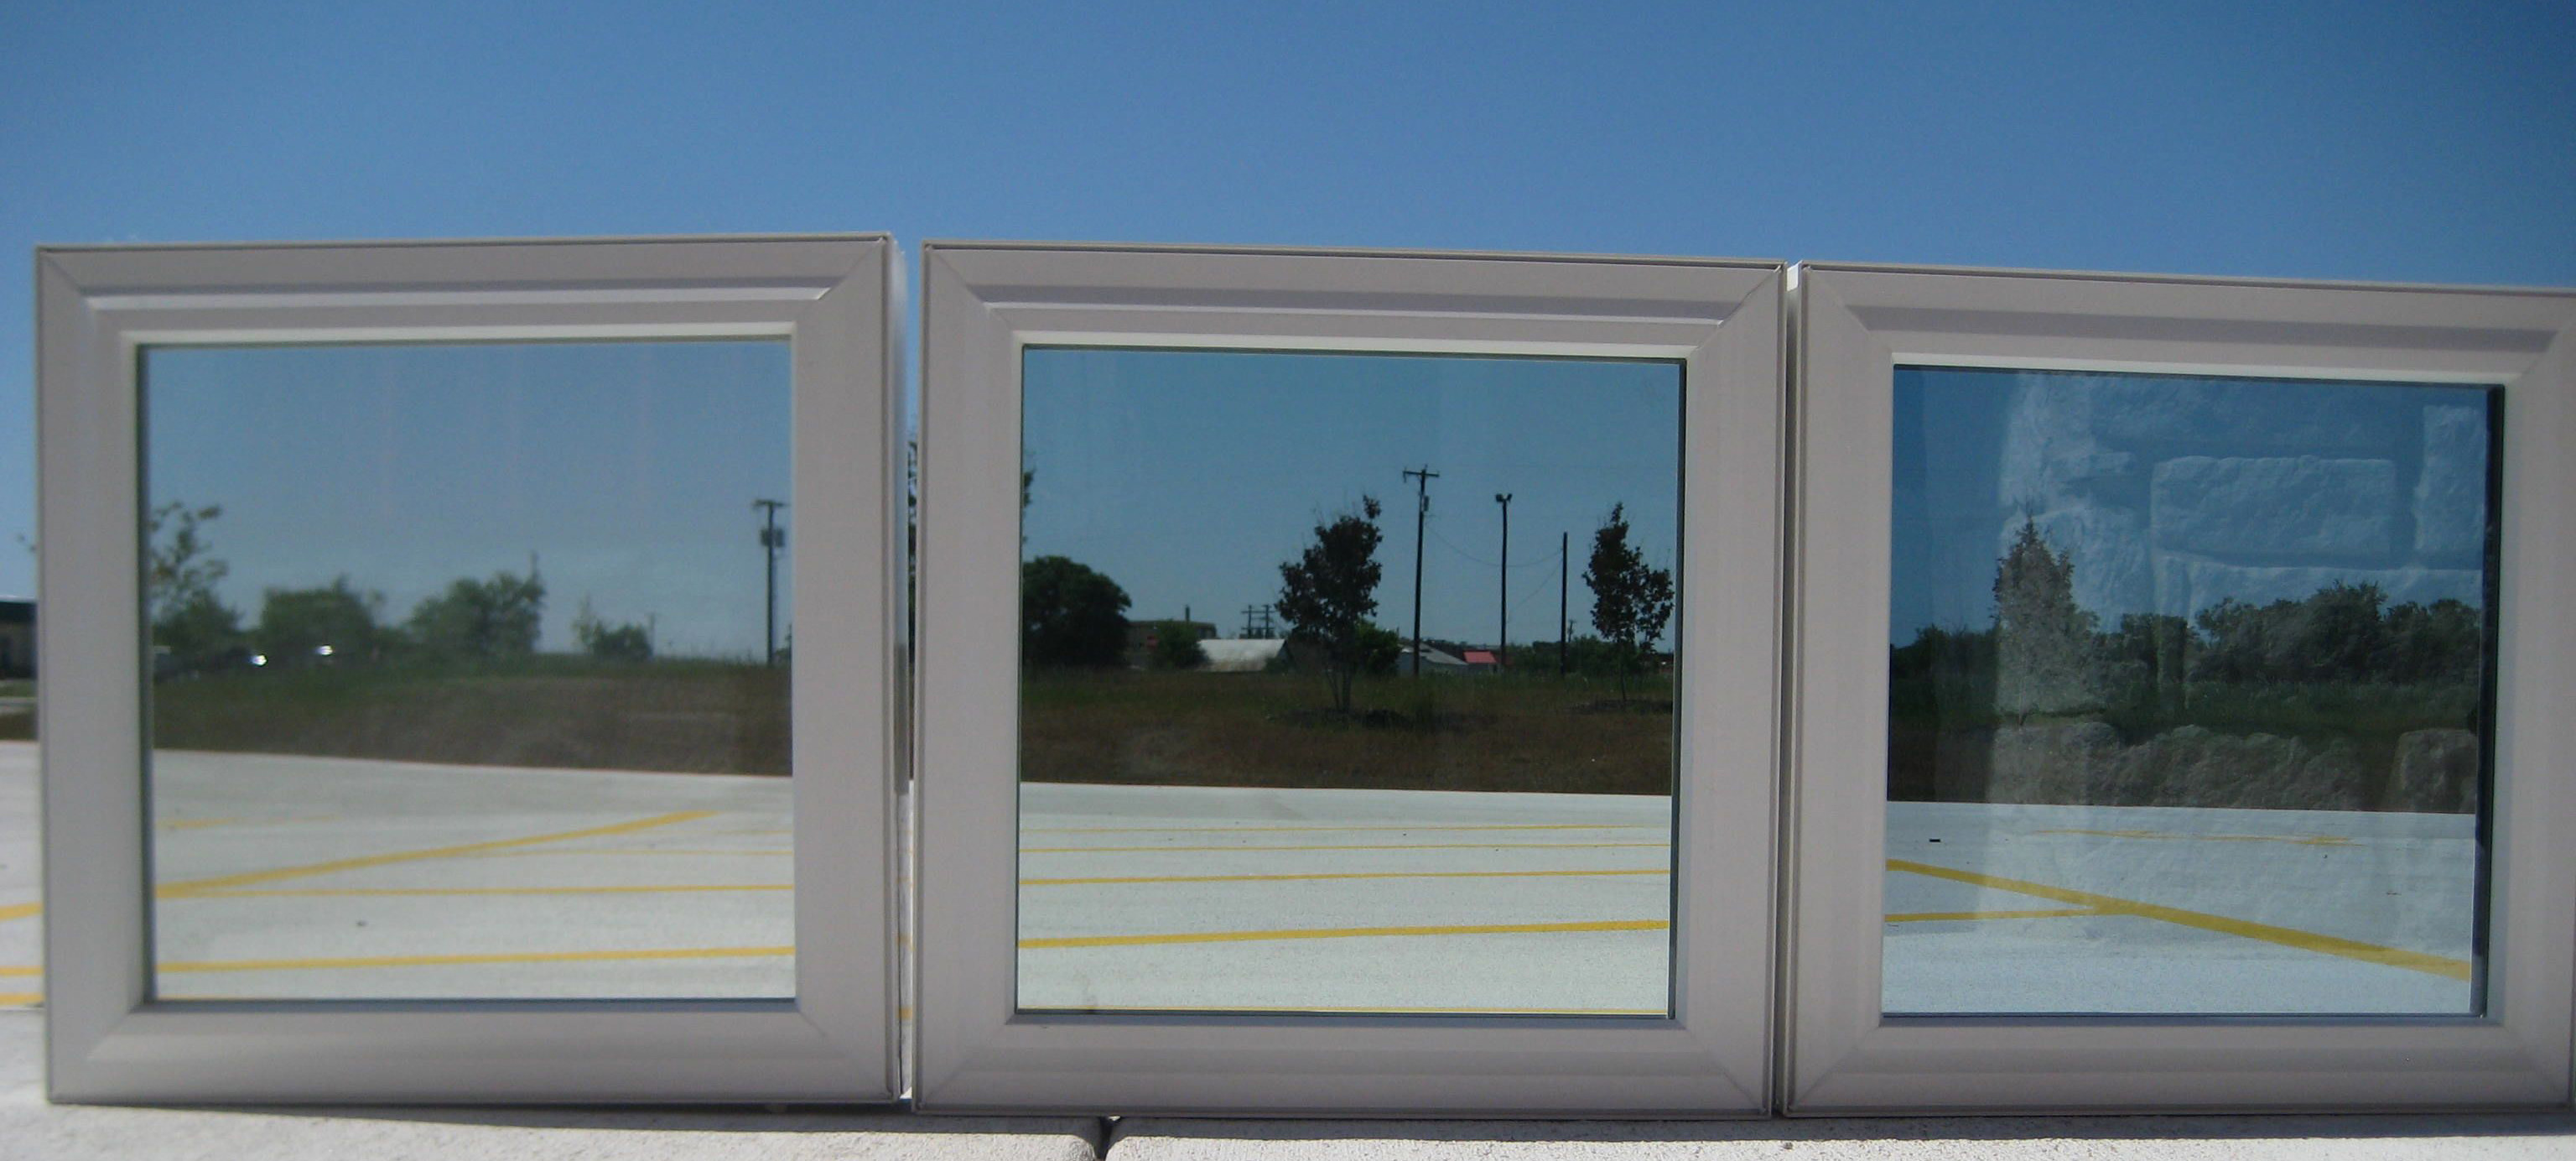 Low E glass energy efficient windows